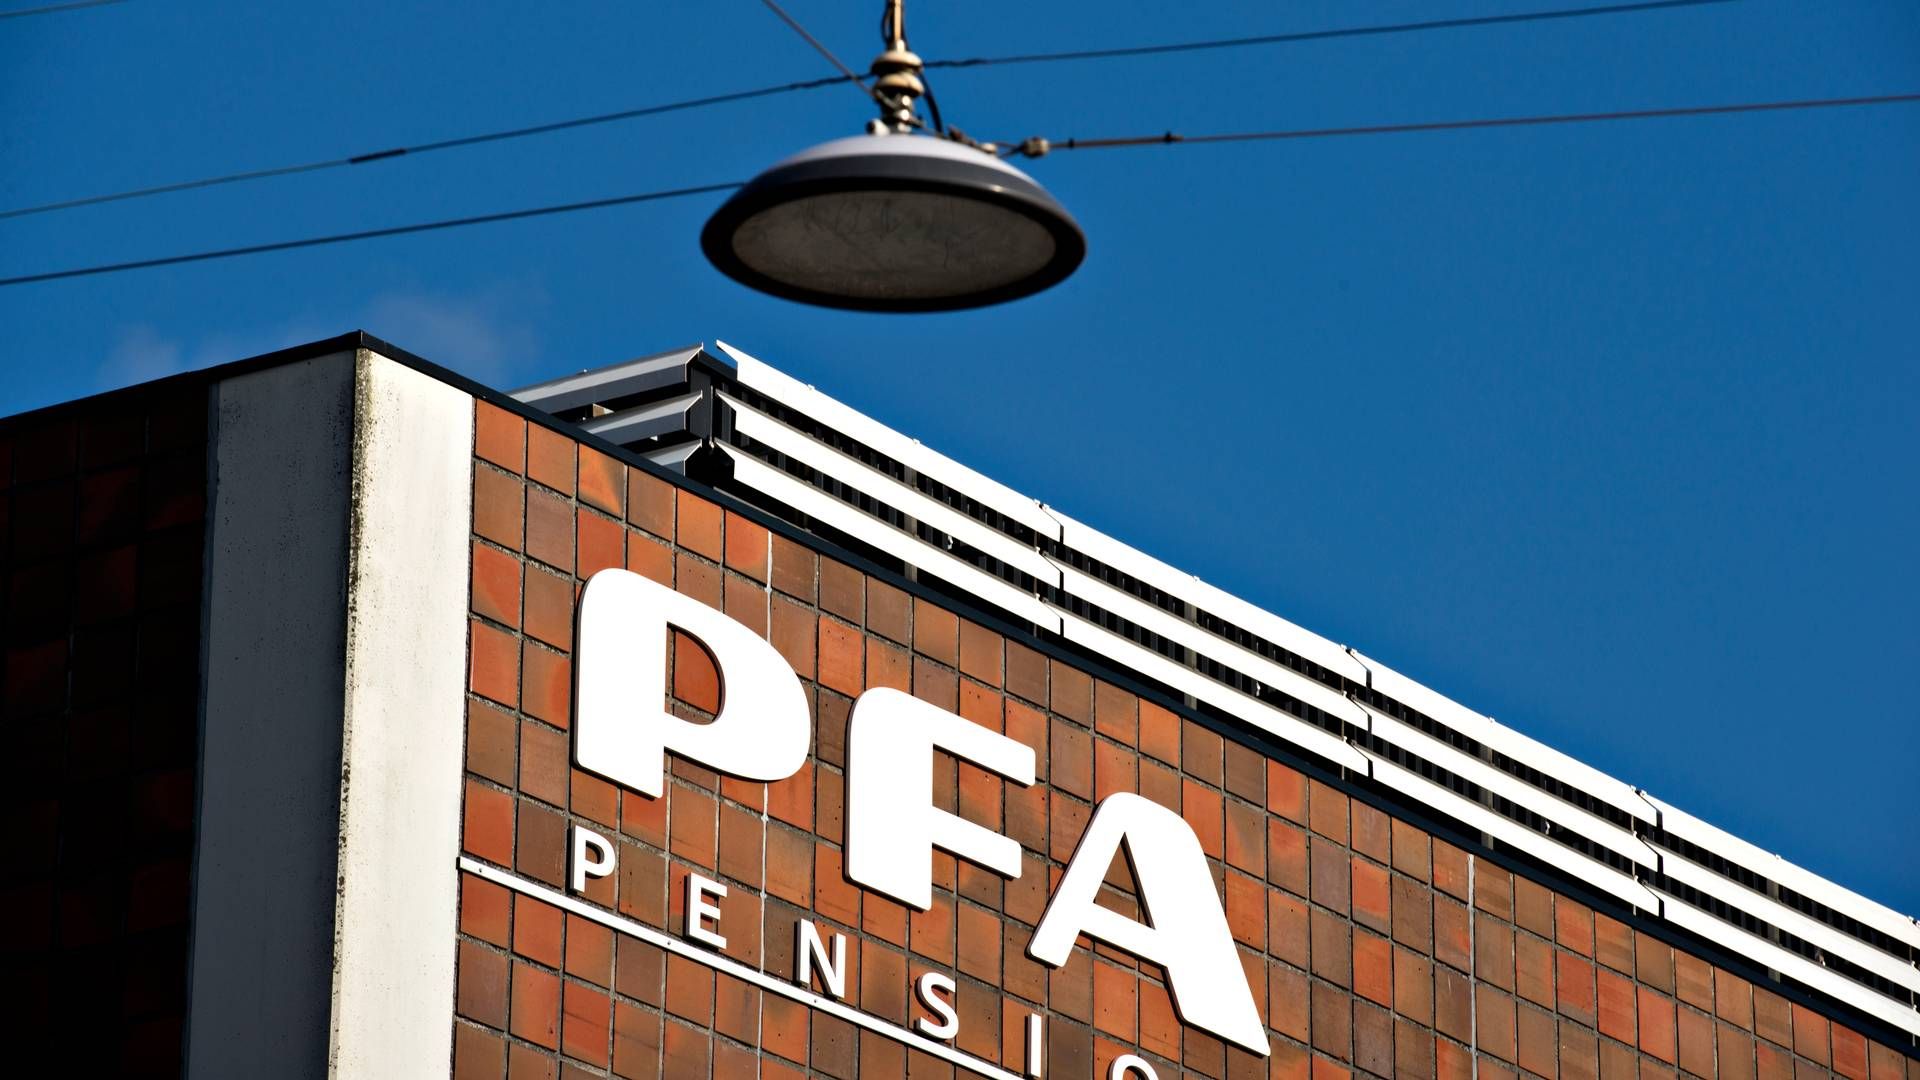 PFA er landets største kommercielle pensionsselskab og har omkring 1,3 mio. kunder. | Foto: Lars Krabbe/Jyllands-Posten/Ritzau Scanpix